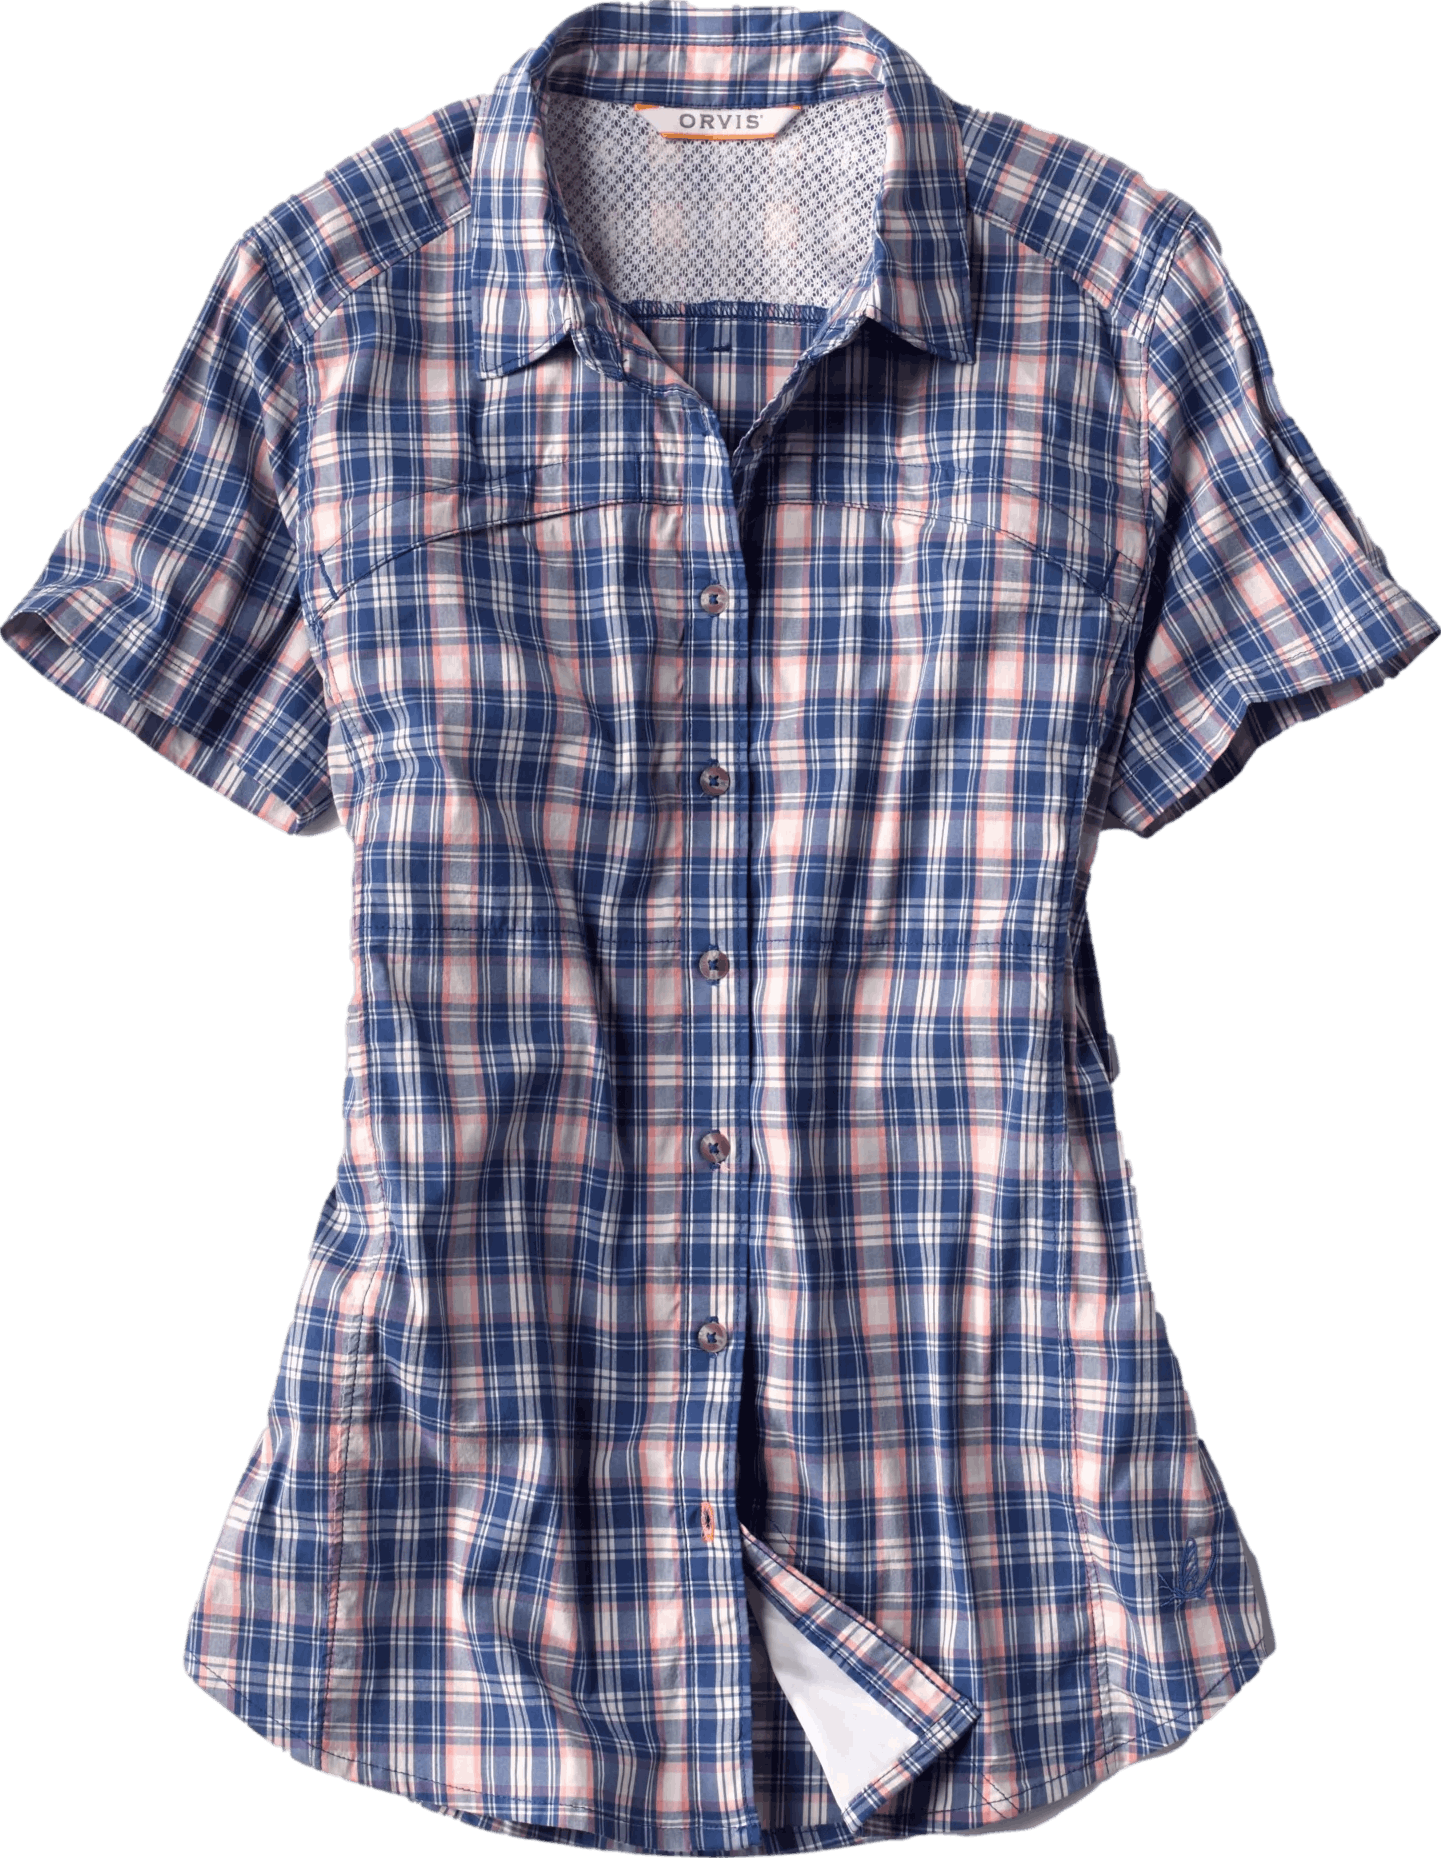 Orvis Women's Short-Sleeved River Guide Shirt- — Big